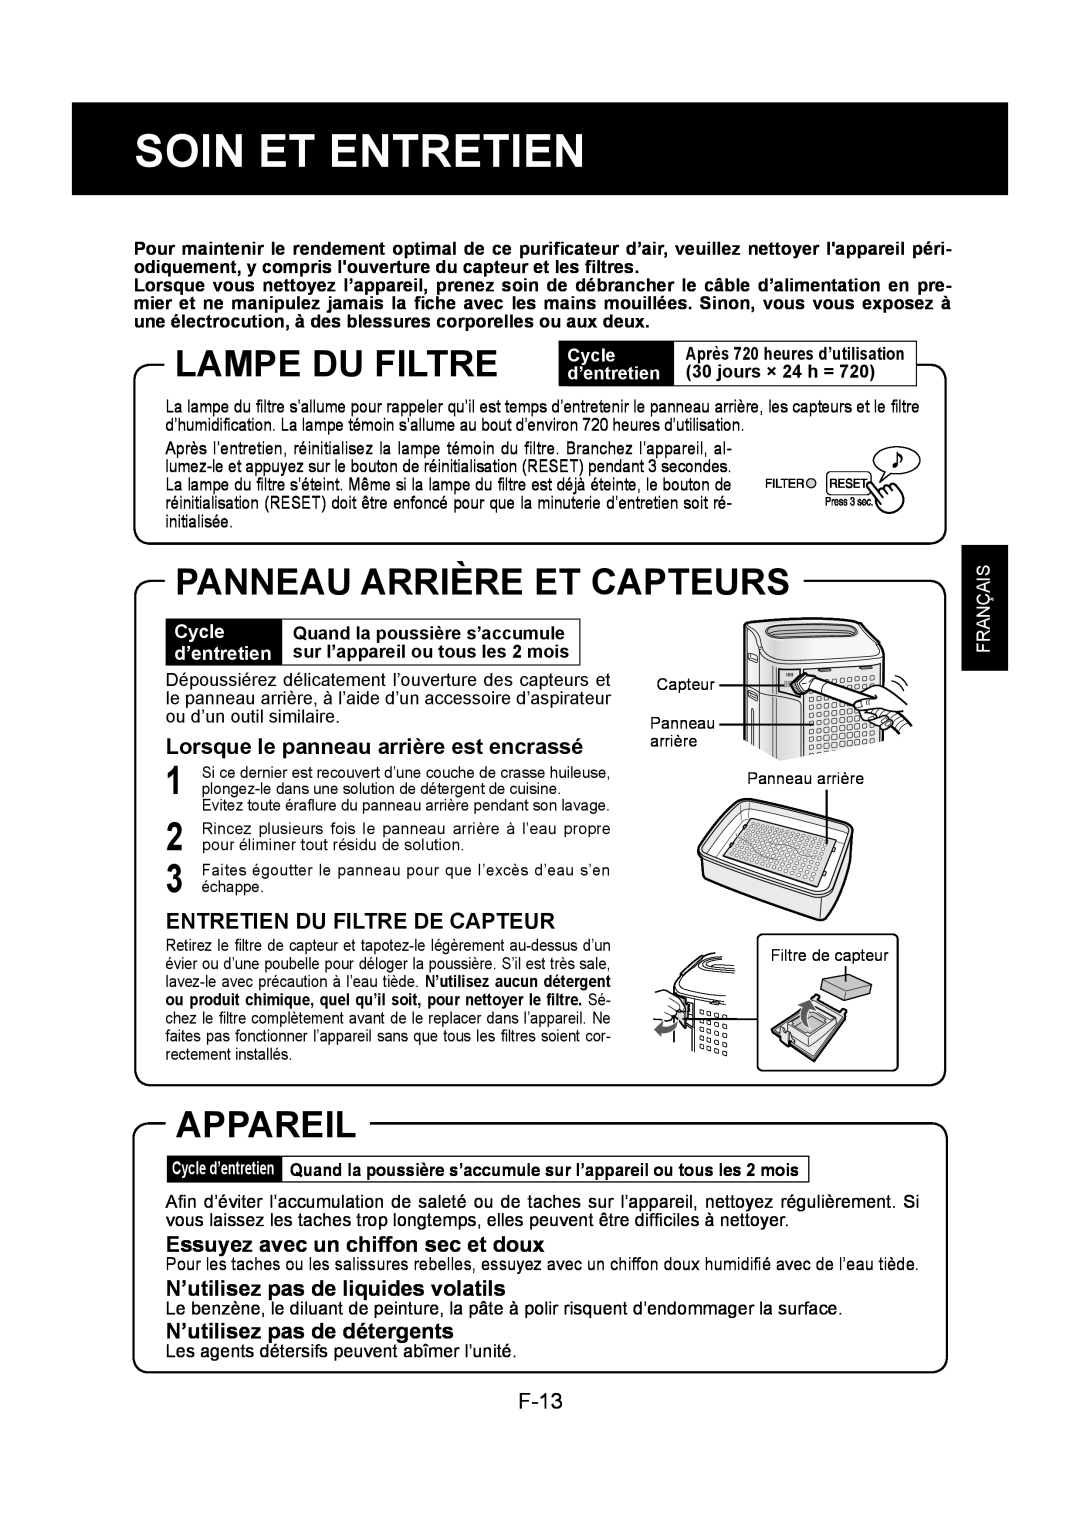 Sharp KC-860U Soin Et Entretien, Lampe Du Filtre, Panneau Arrière Et Capteurs, Appareil, Entretien Du Filtre De Capteur 